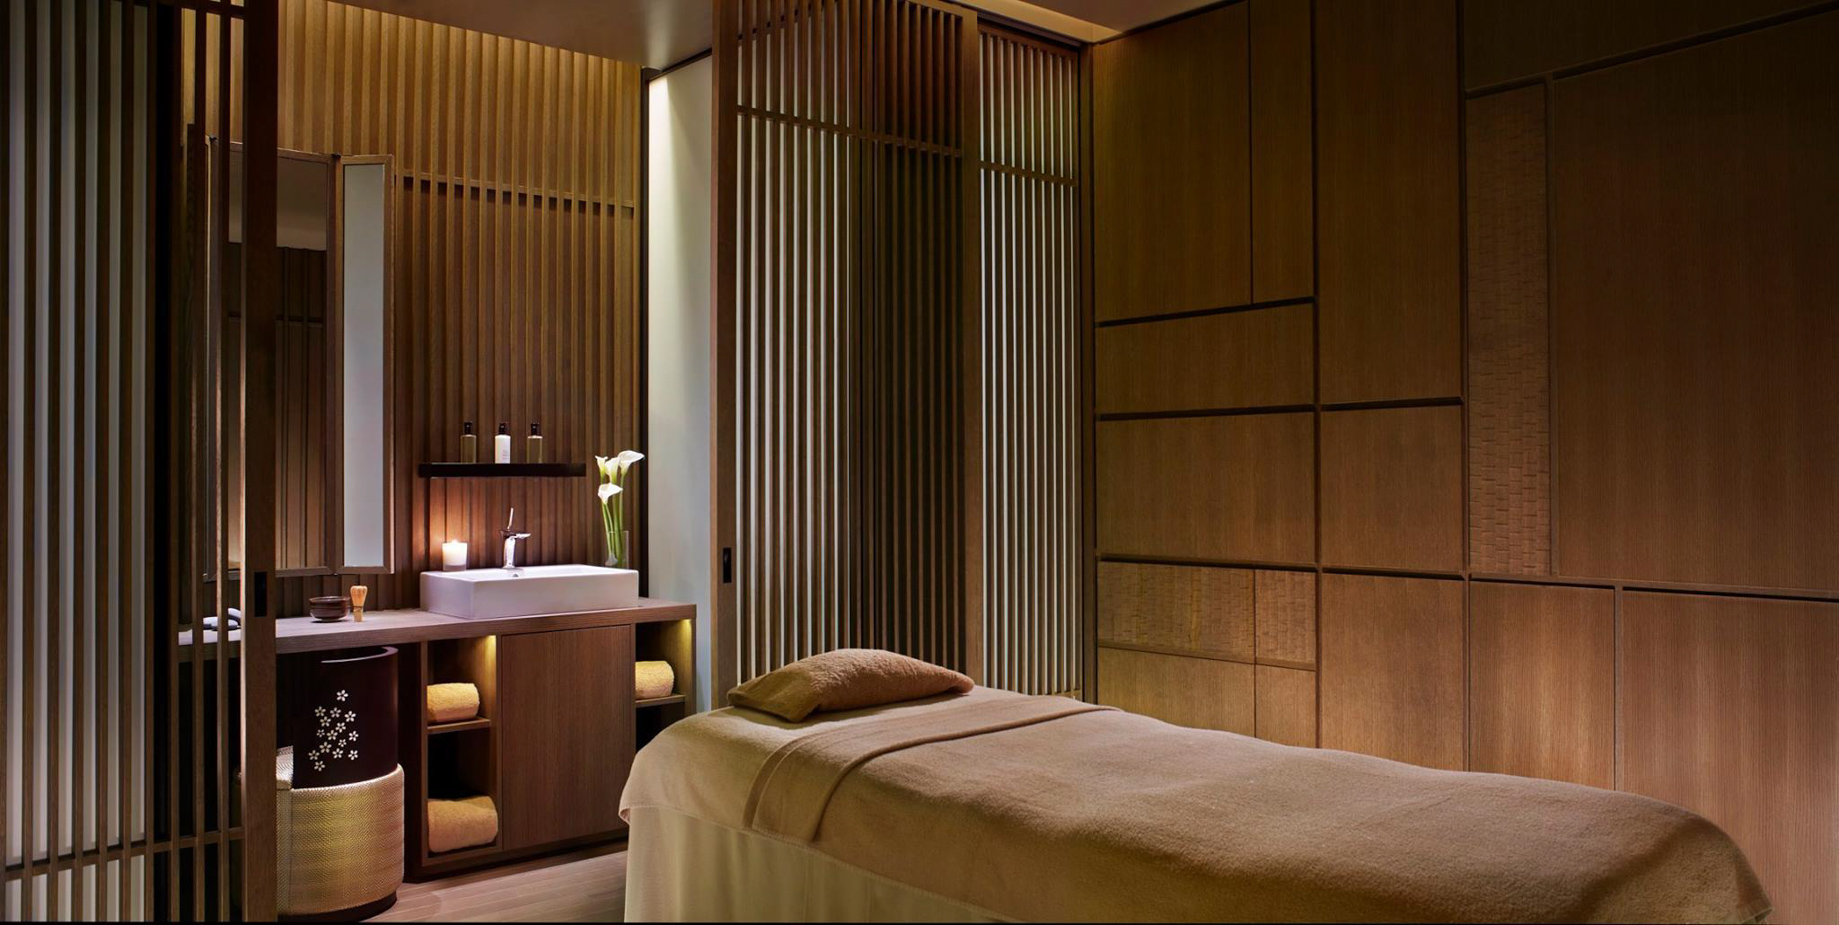 The Ritz-Carlton, Kyoto Hotel – Nakagyo Ward, Kyoto, Japan – Spa Treatment Room